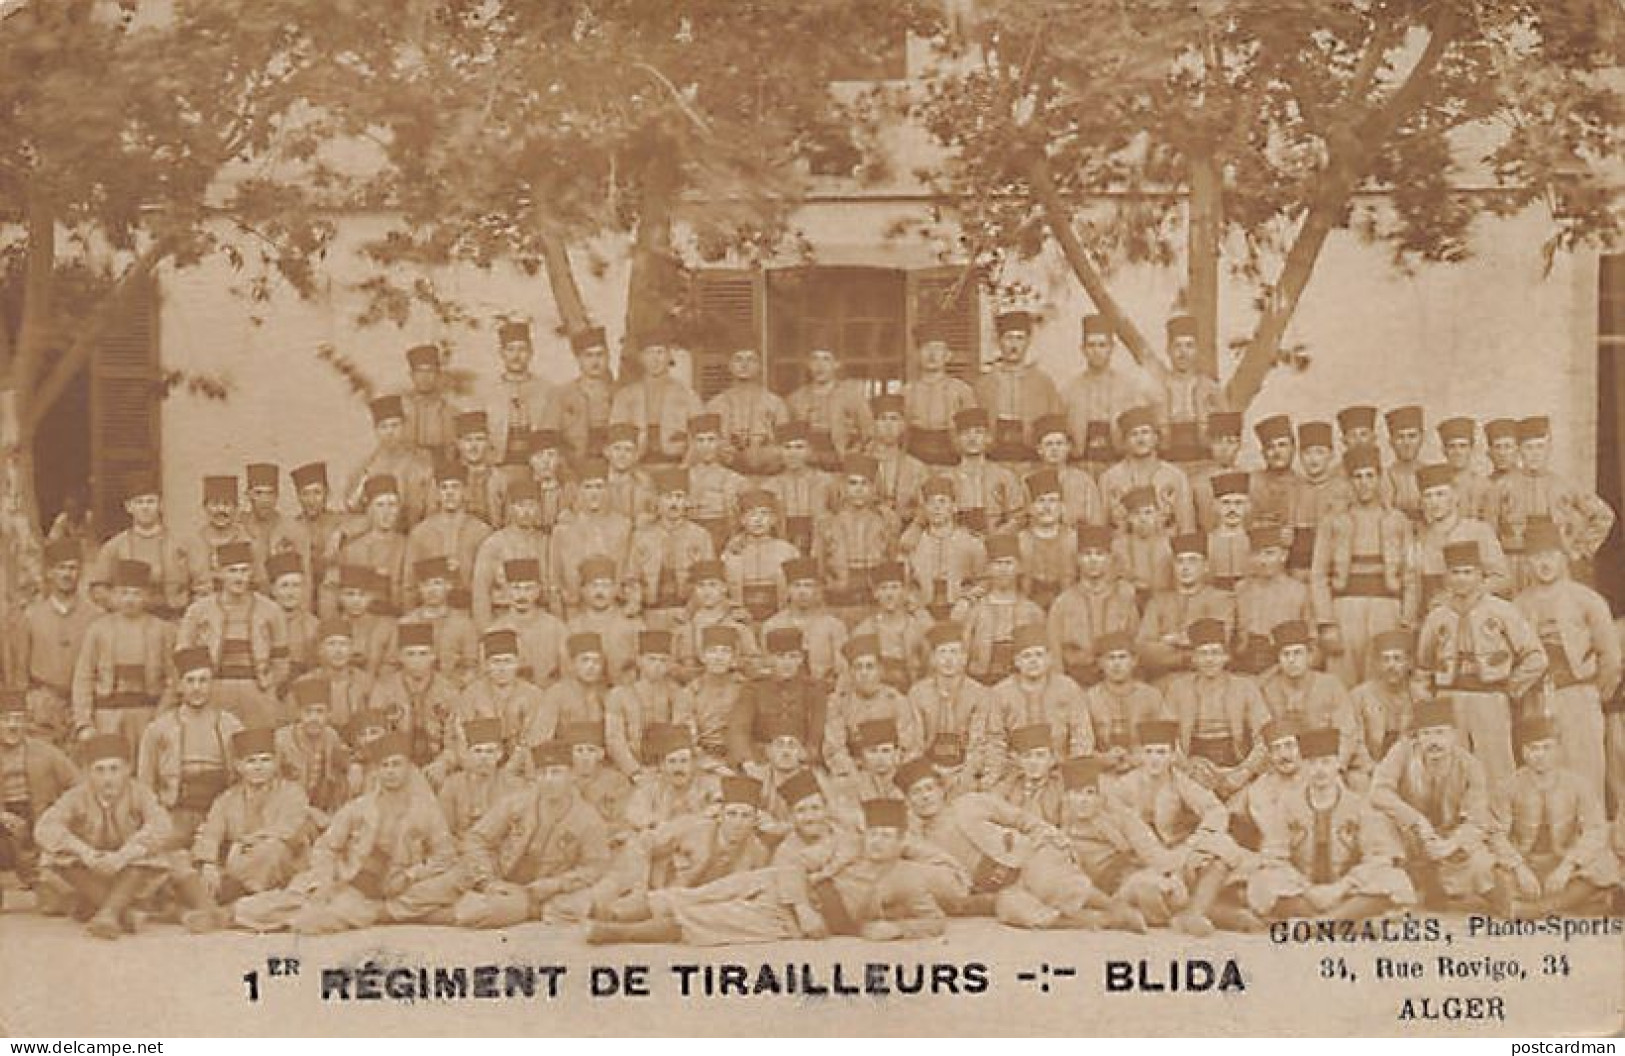 Algérie - BLIDA - 1er Régiment De Tirailleurs - CARTE PHOTO - Ed. Gonzalès - Photo-Sports  - Blida